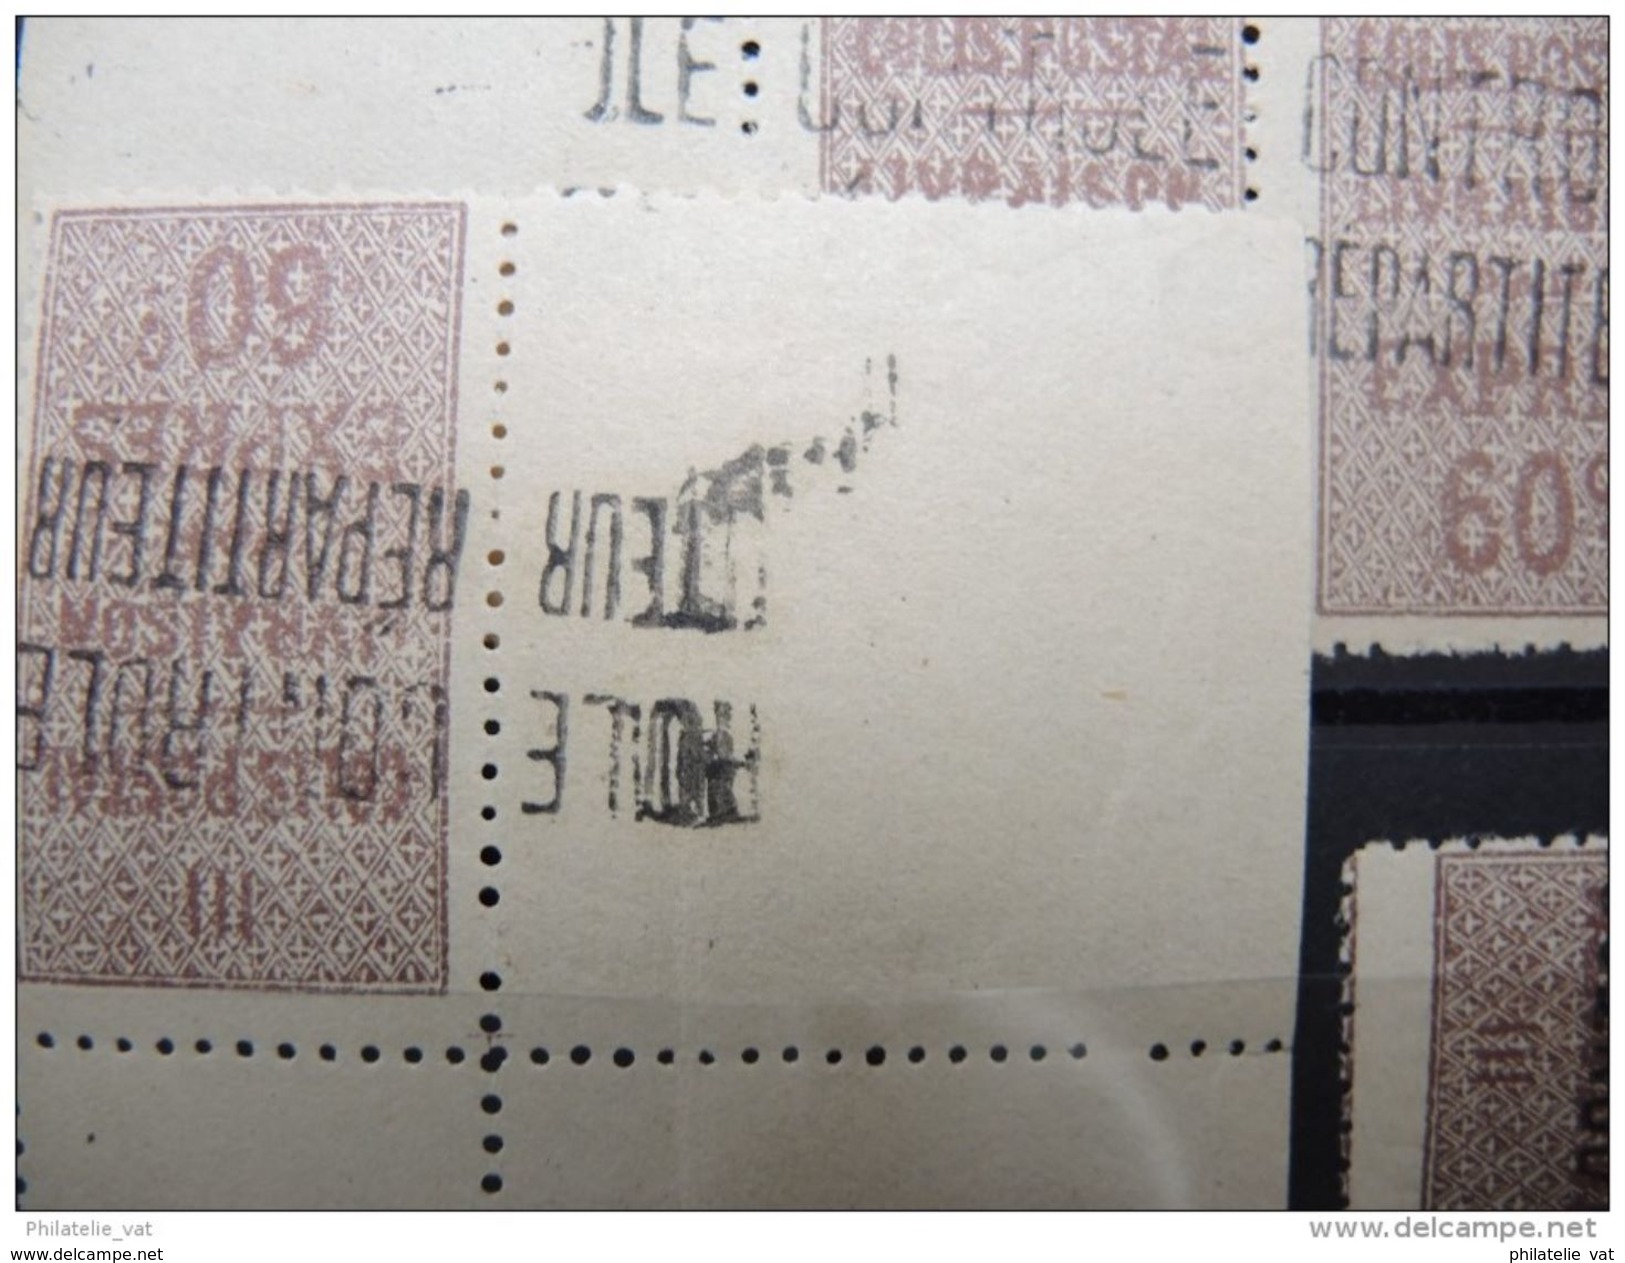 ALGERIE FRANCAISE - Superbe lot de colis postaux - Luxes - 12 plaquettes - Pas courant dans cette qualité - P16301